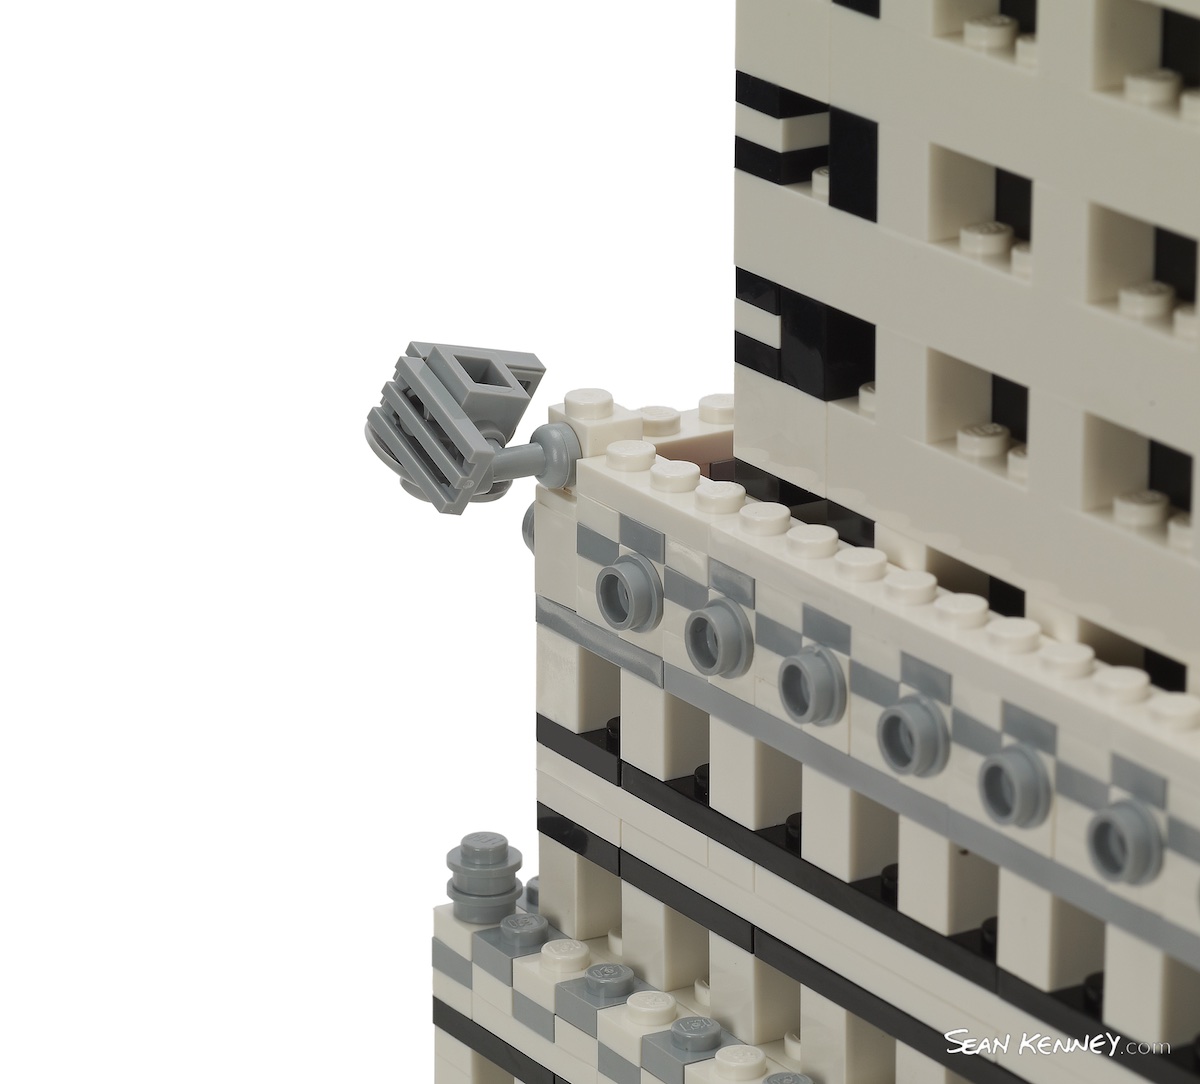 Greatest LEGO artist - Chrysler Building